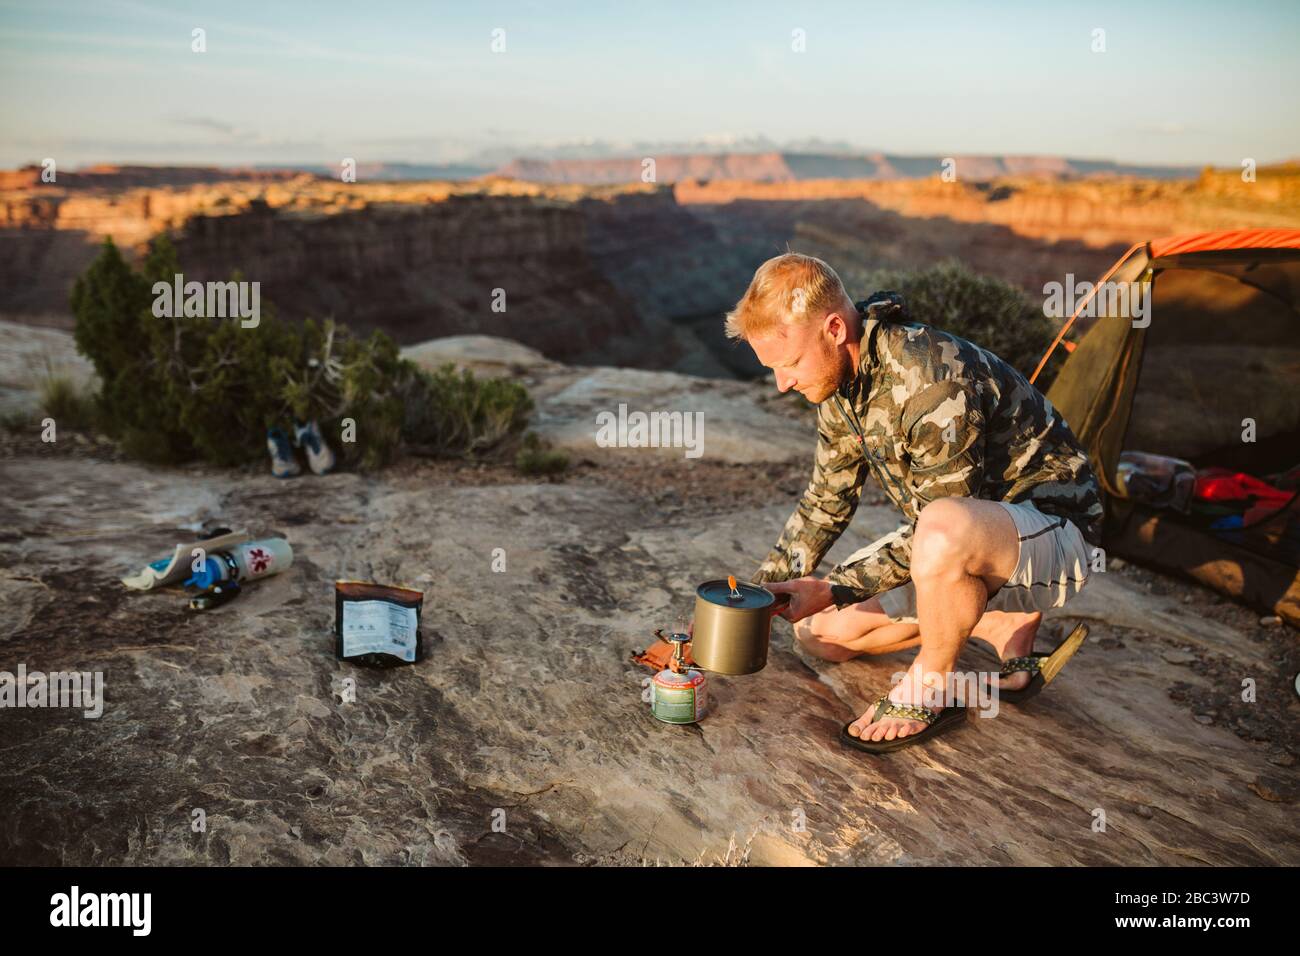 Männlicher Camper kocht Wasser mit einem Flüsterlicht im Camp in der Wüste Stockfoto